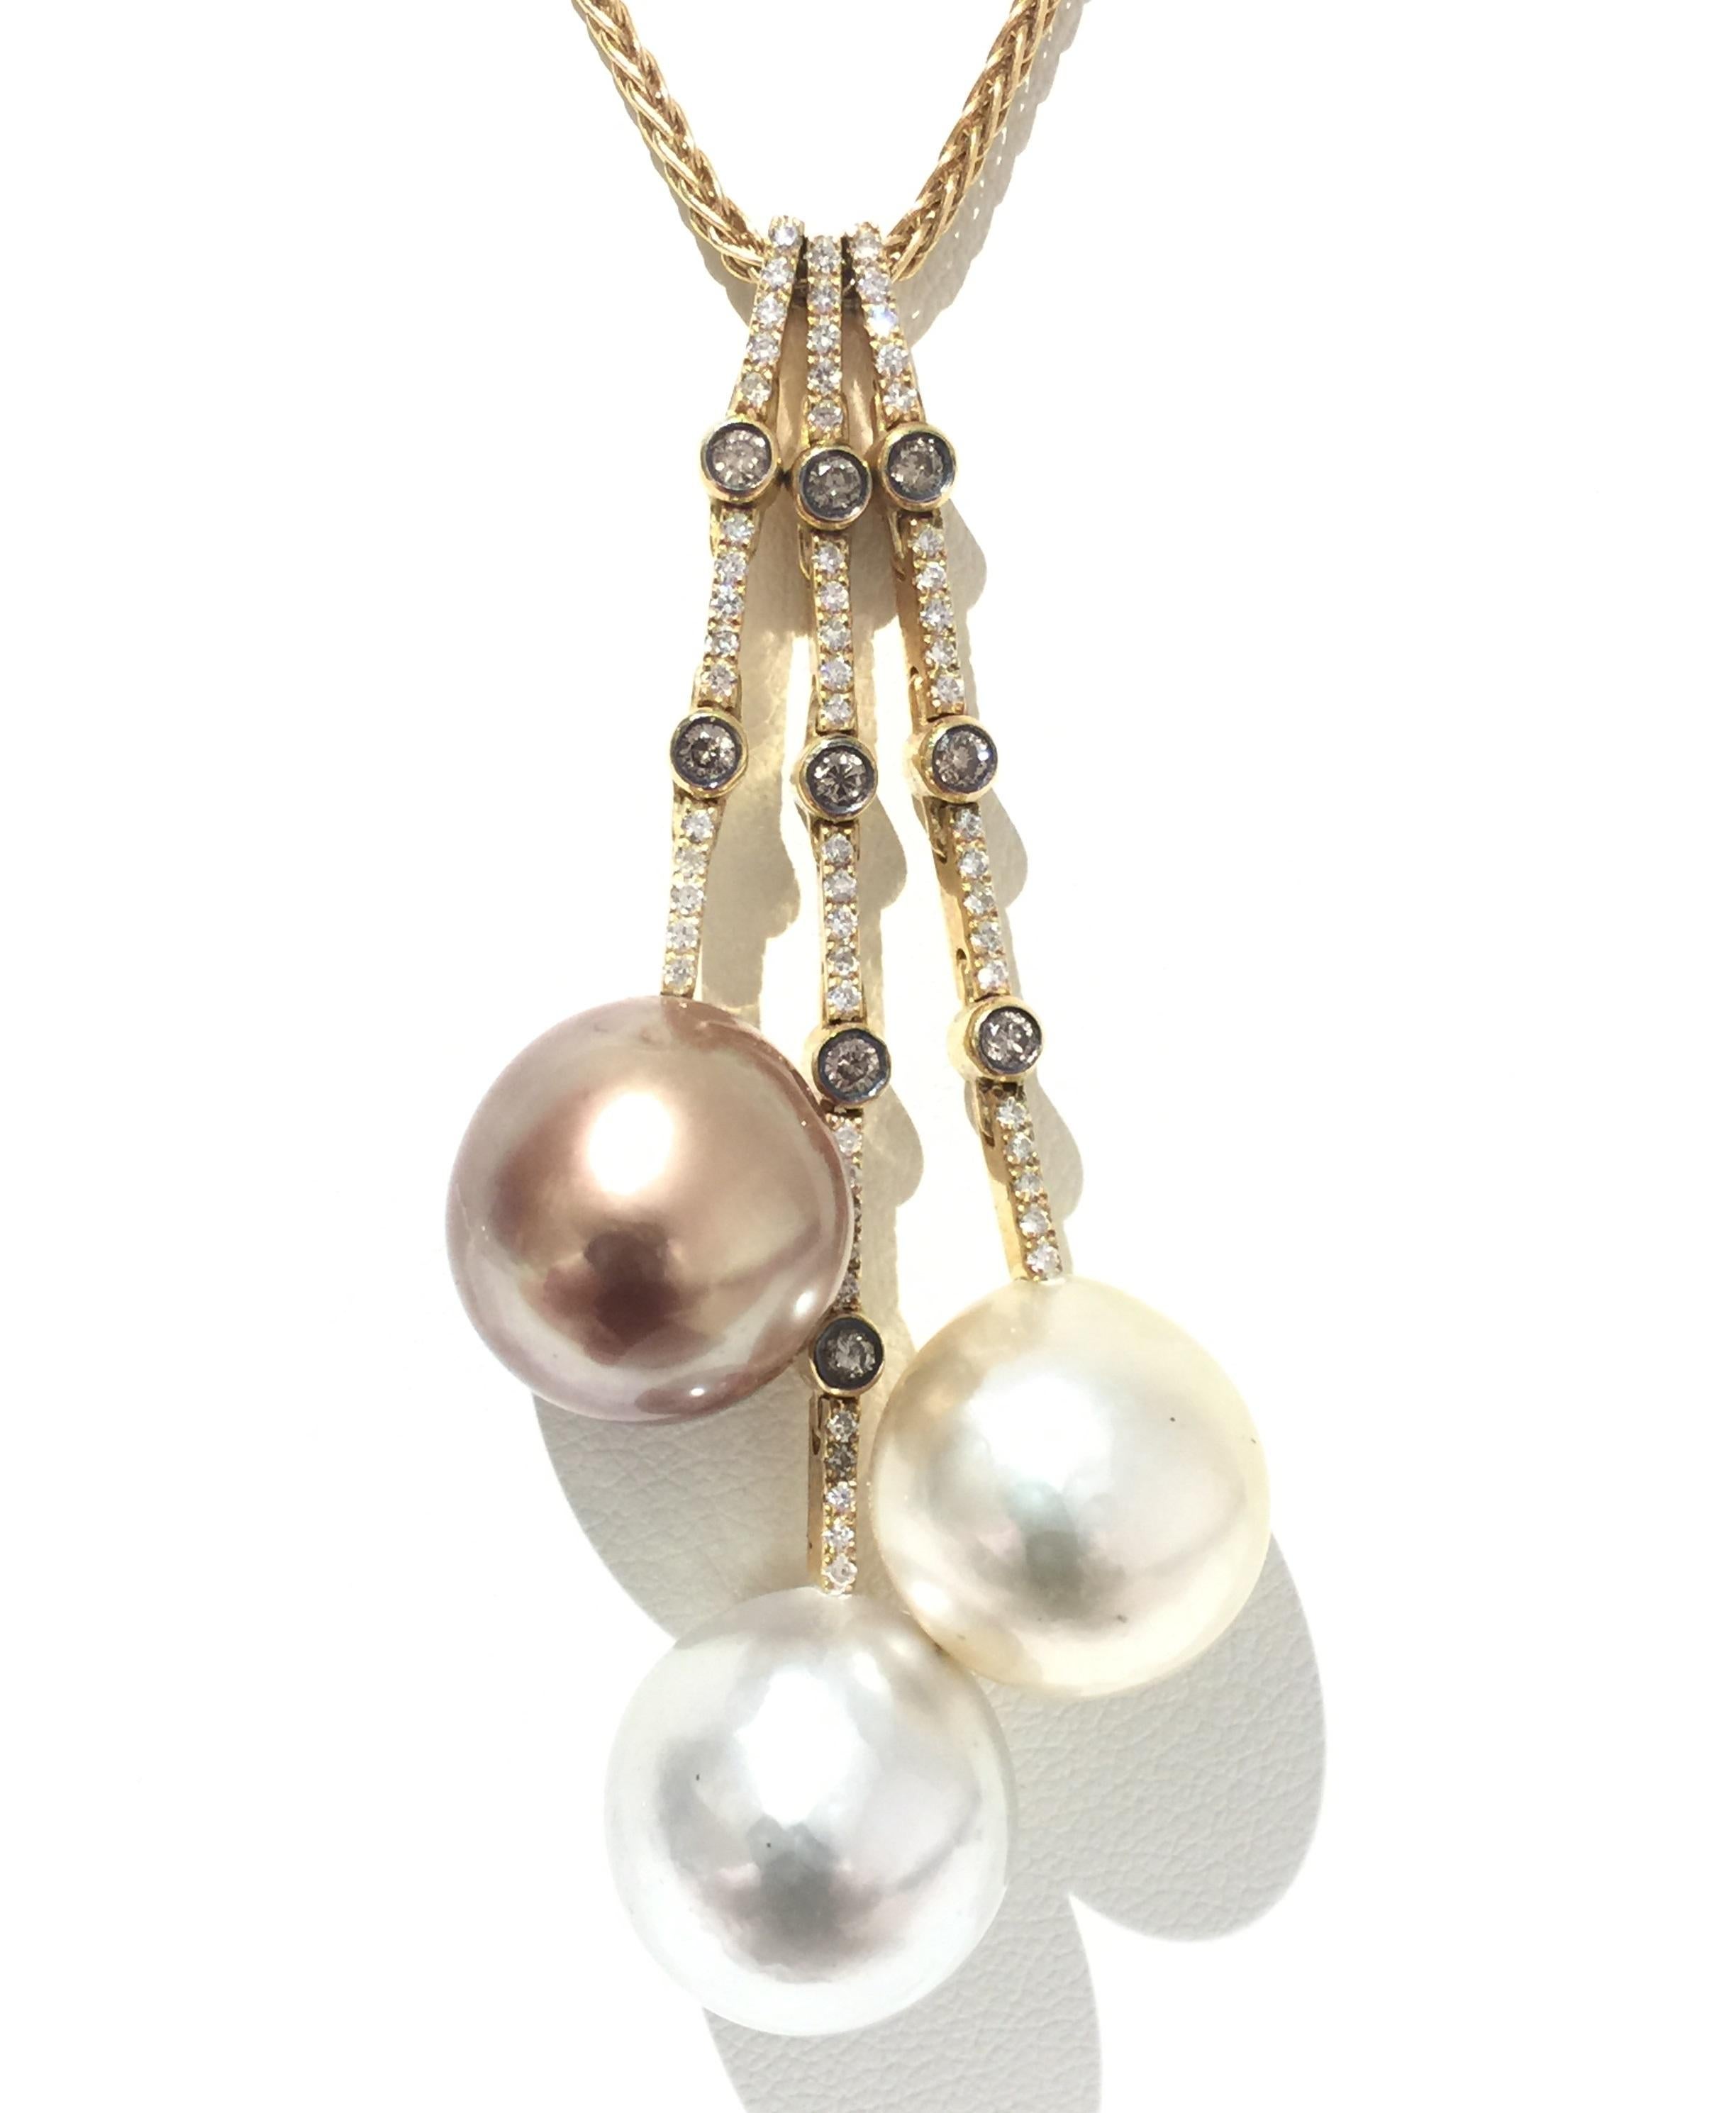 Yvel Perlen und Diamanten Halskette.
18k Gelbgold 
Perlen 
Diamanten 0,63ctw
N1LAR3GBY